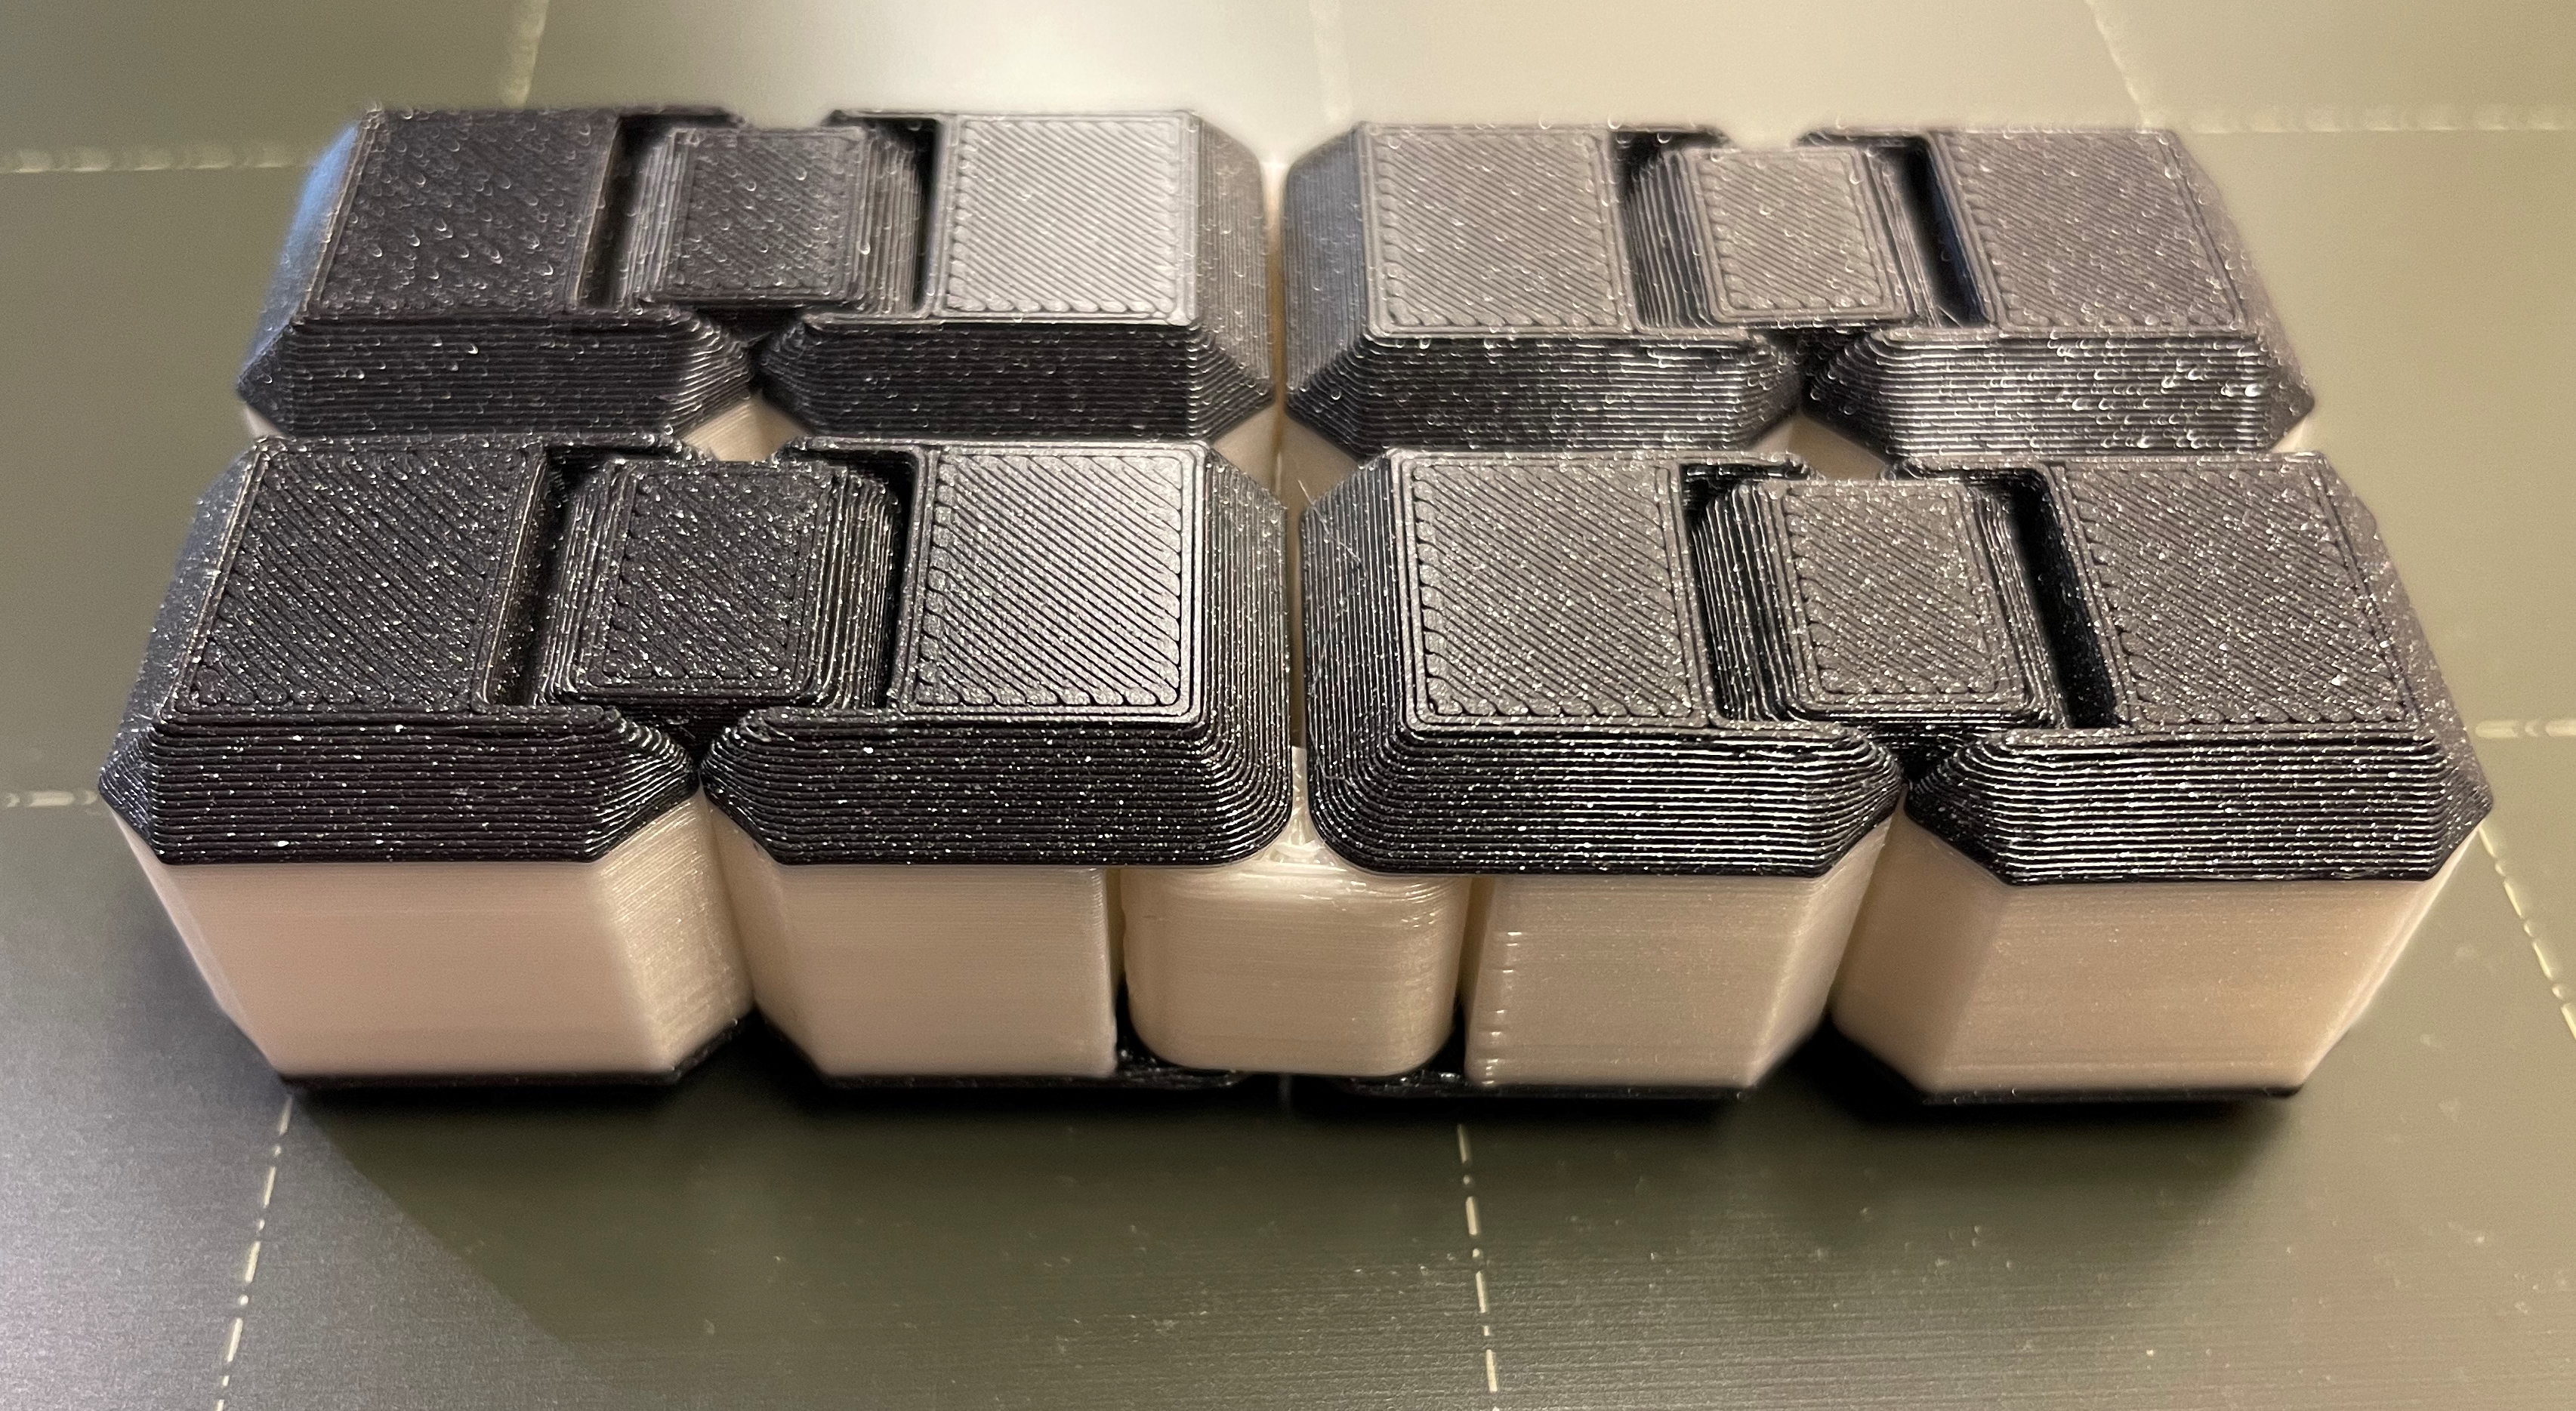 Fidget Infinity Cube v2, "OREO" edition.